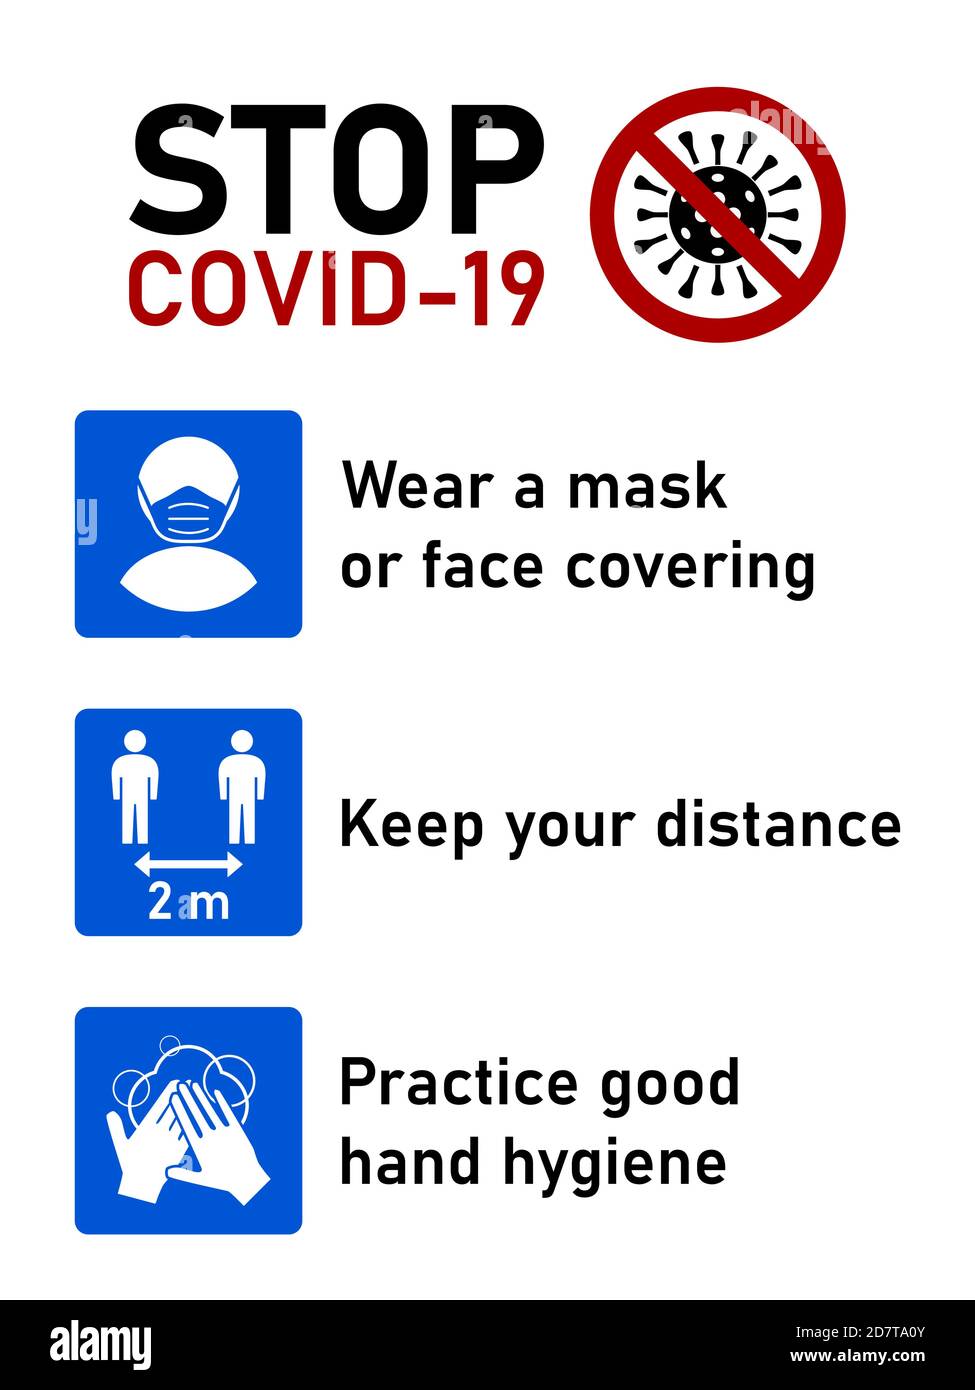 Stop Covid-19 Coronavirus Regelsatz einschließlich Tragen Sie eine Maske oder Gesichtsbedeckung, halten Sie Ihren Abstand 2 Meter und üben gute Handhygiene. Vektorbild. Stock Vektor